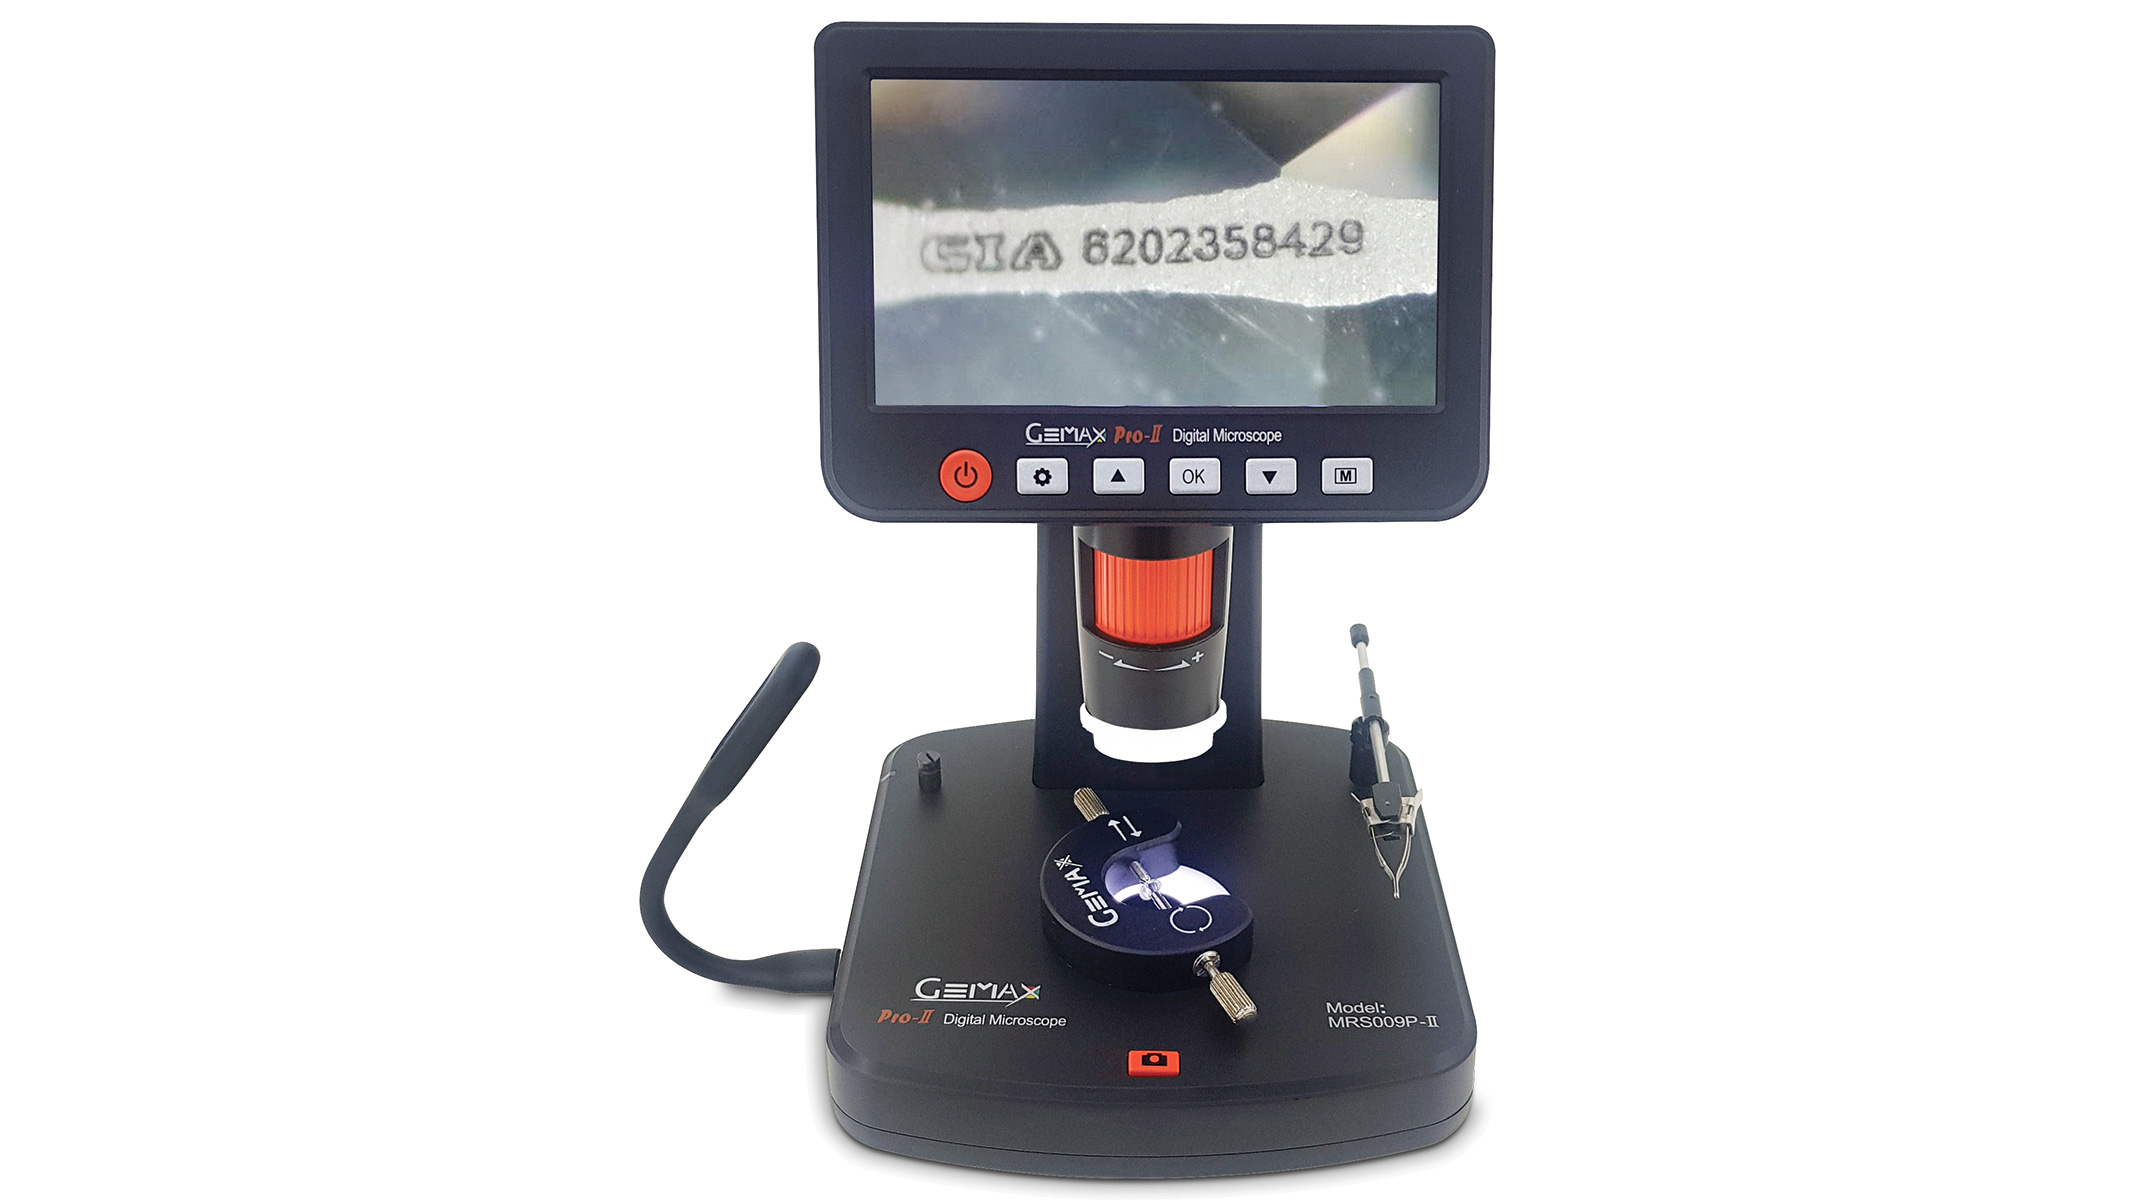 Gemax Pro-II Digital Mikroskop, inkl. Software, SD-Karte, Stecker für EU und UK